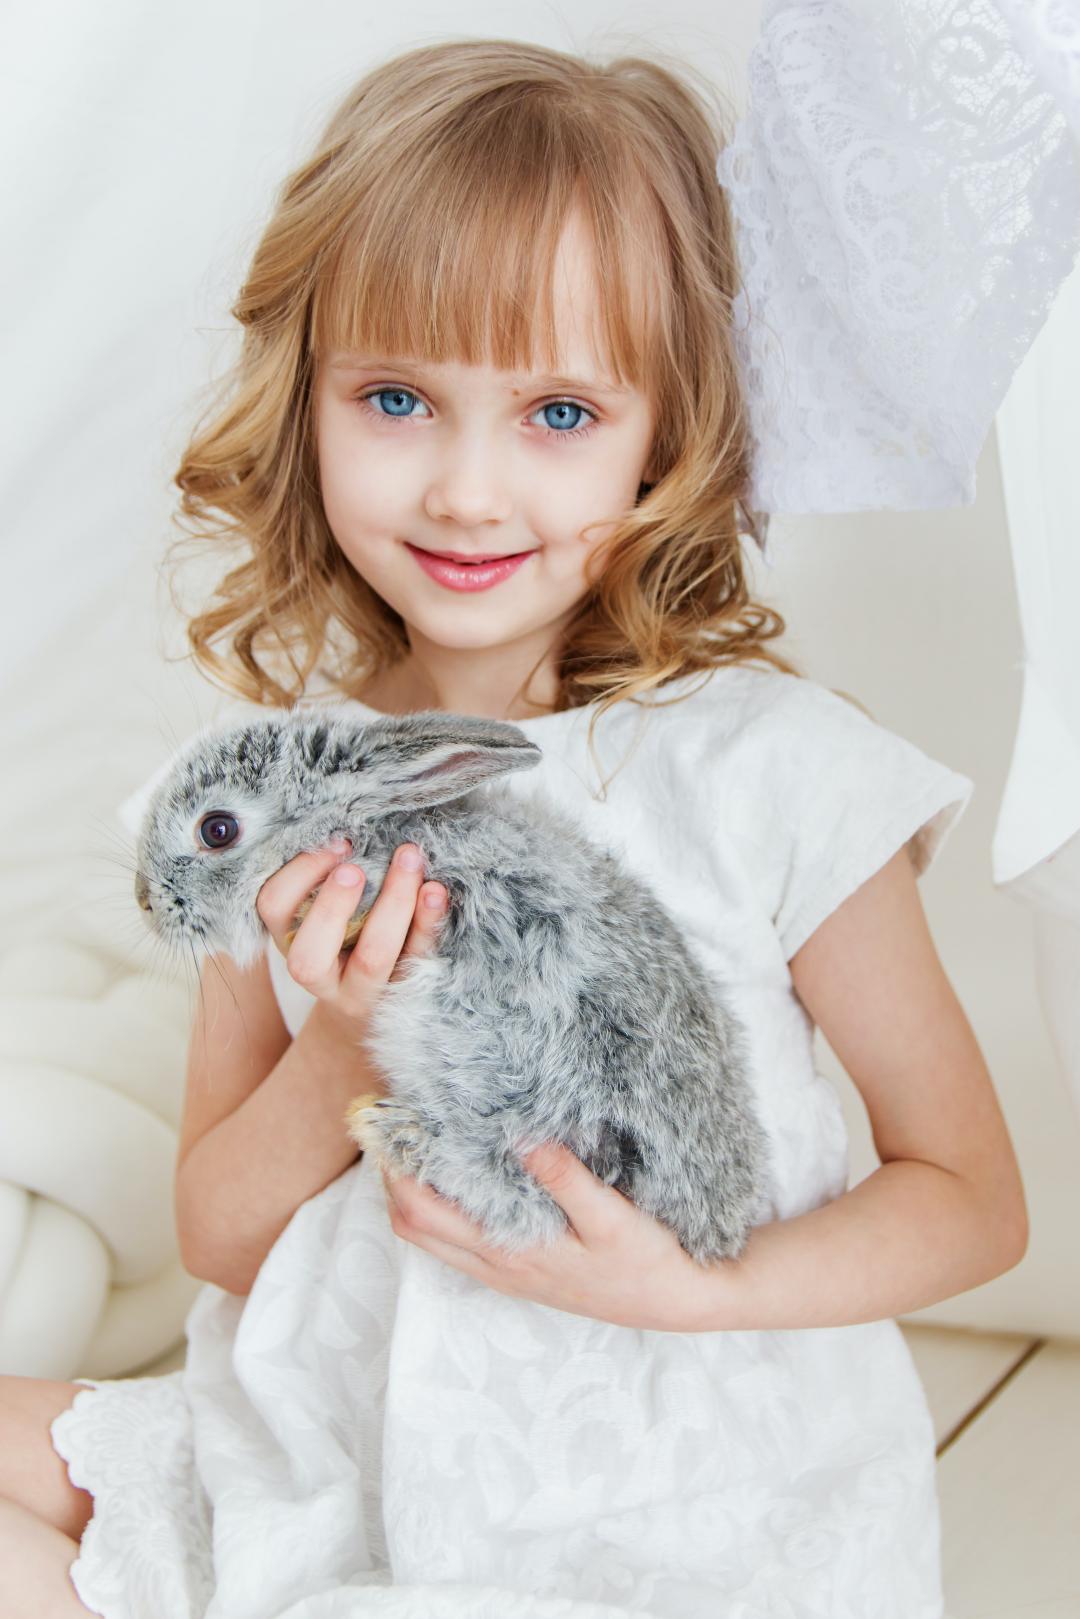 抱着小兔子的小女孩图片可爱电脑桌面壁纸-壁纸图片大全